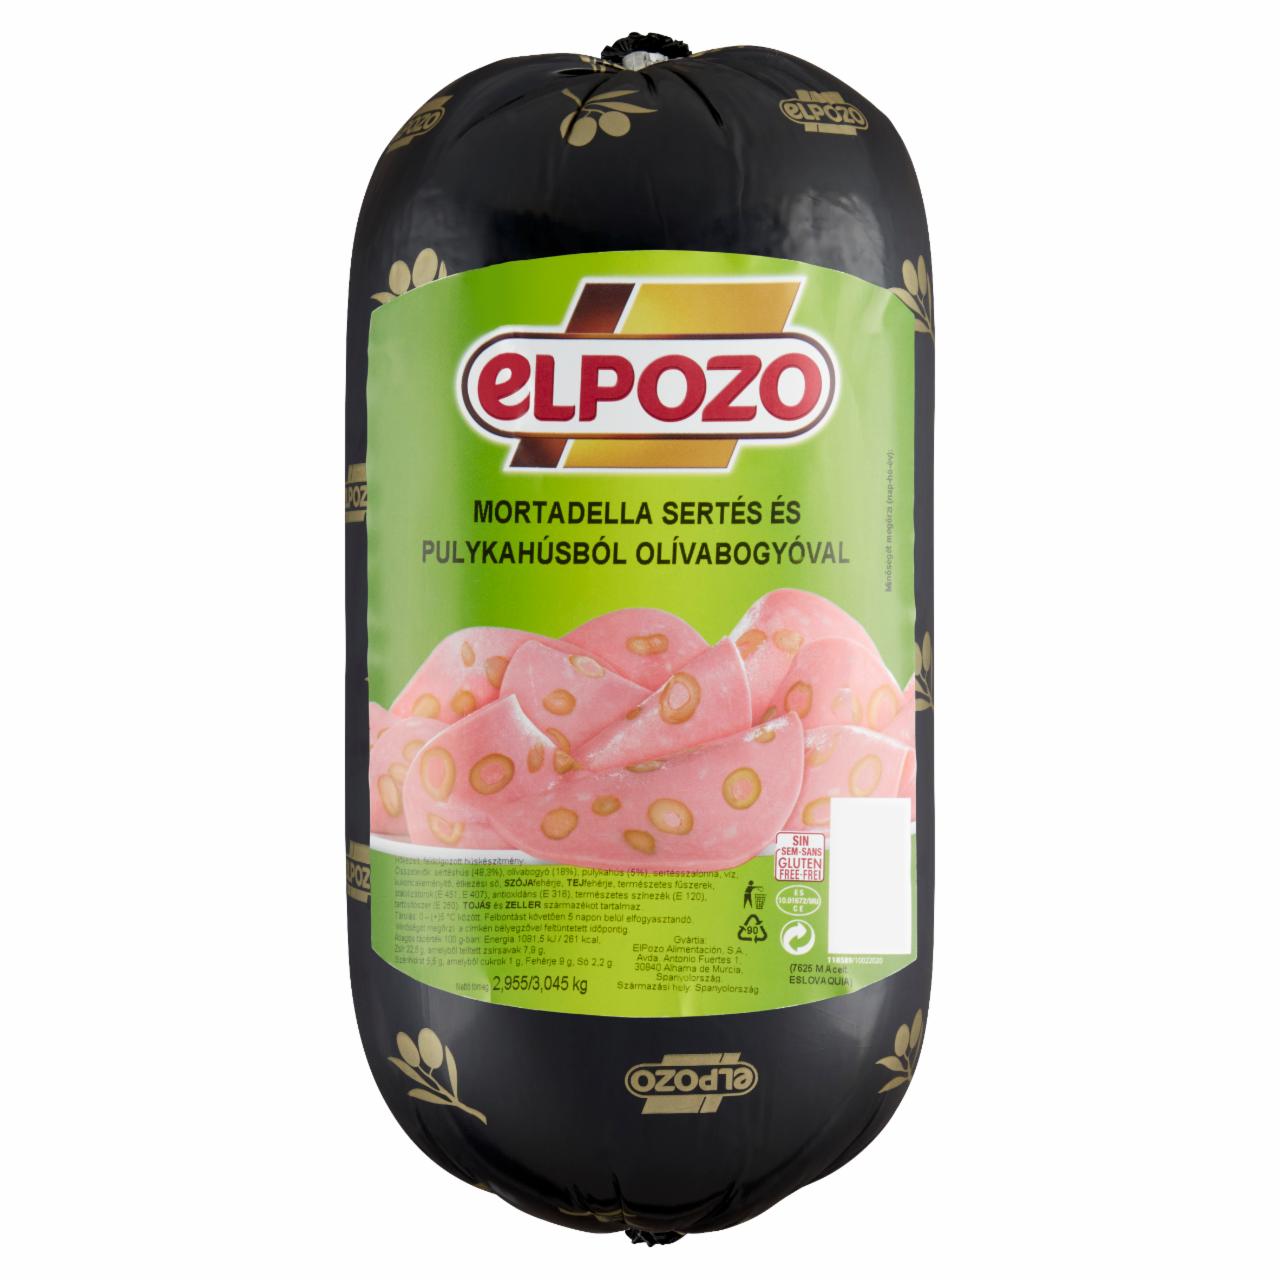 Képek - El Pozo mortadella sertés és pulykahúsból olívabogyóval